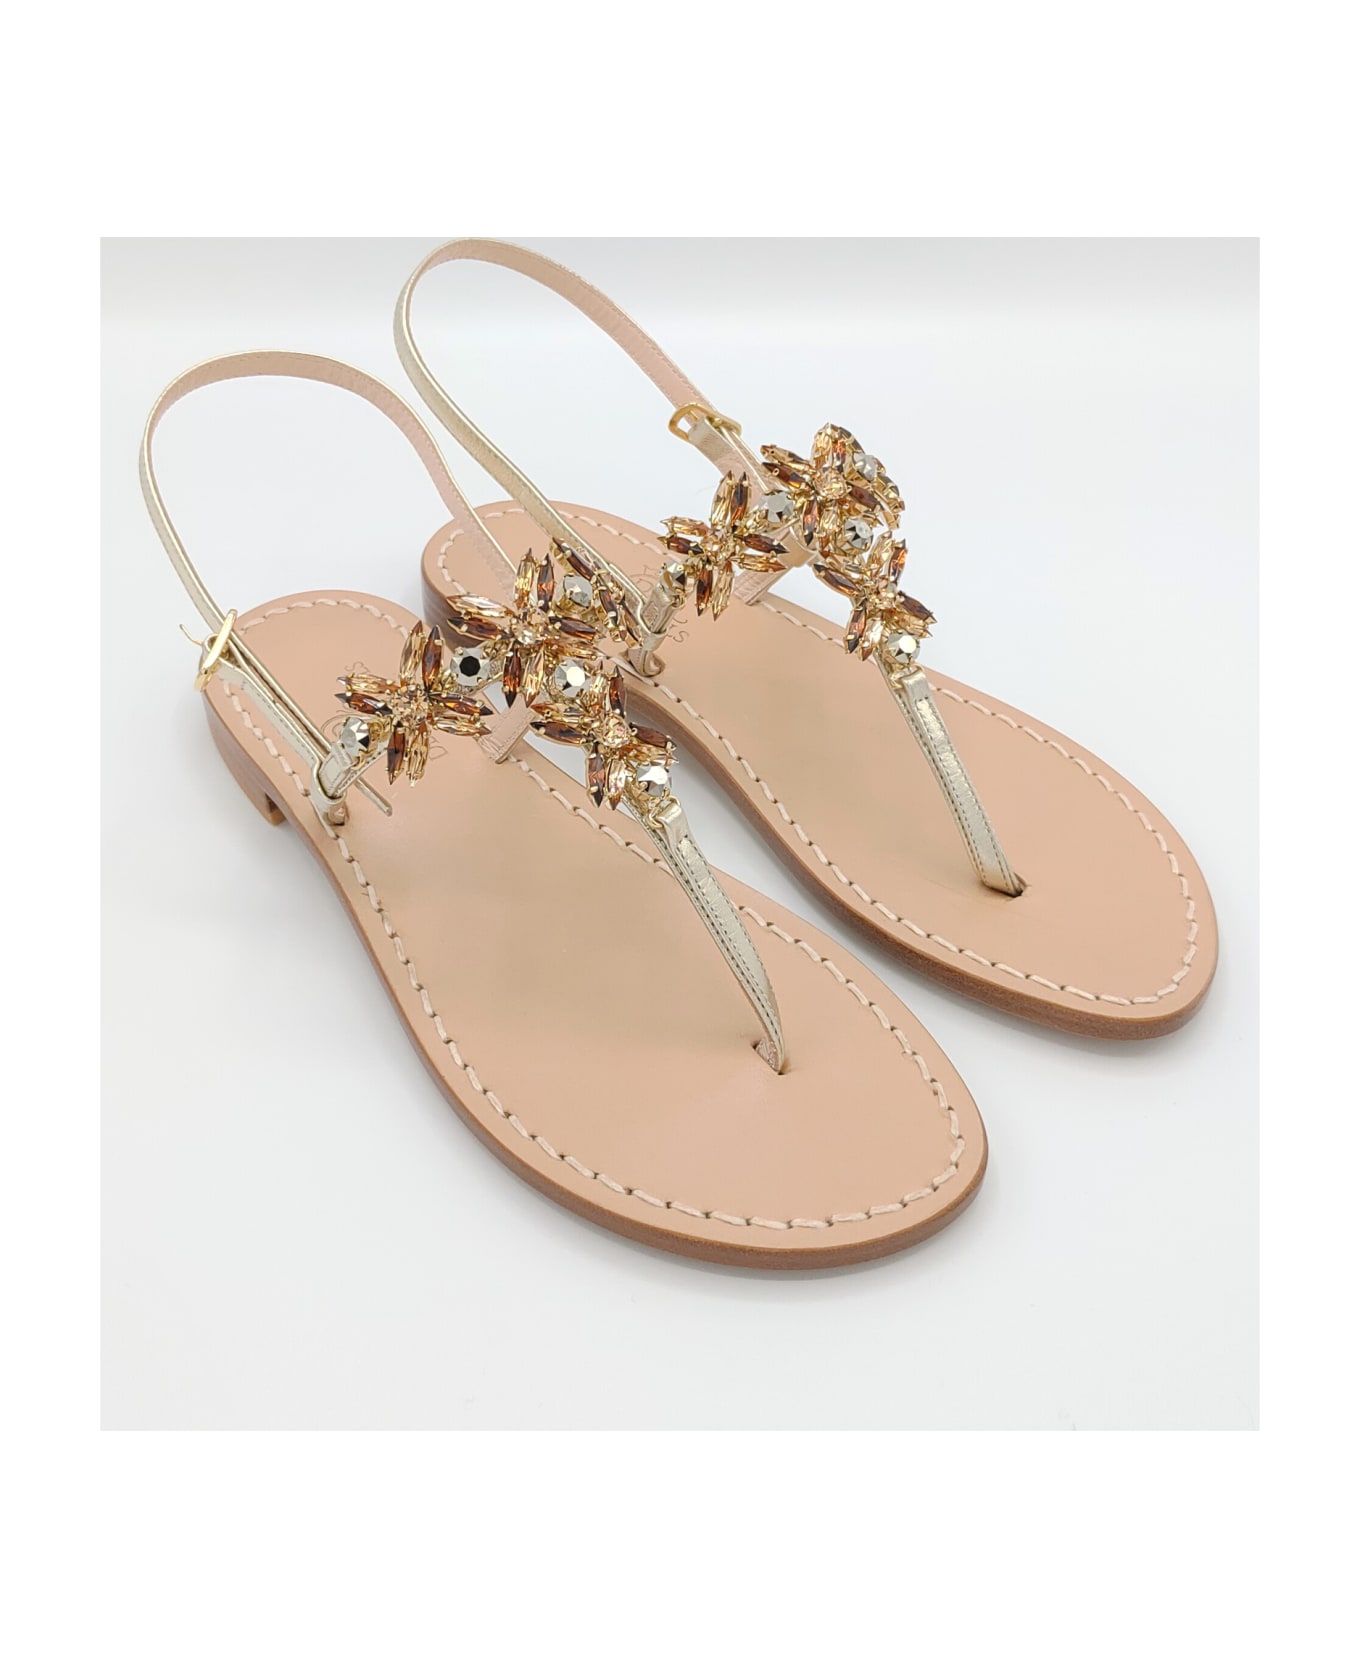 Dea Sandals Bagni Di Tiberio Jewel Thong Sandals - gold, gray, amber